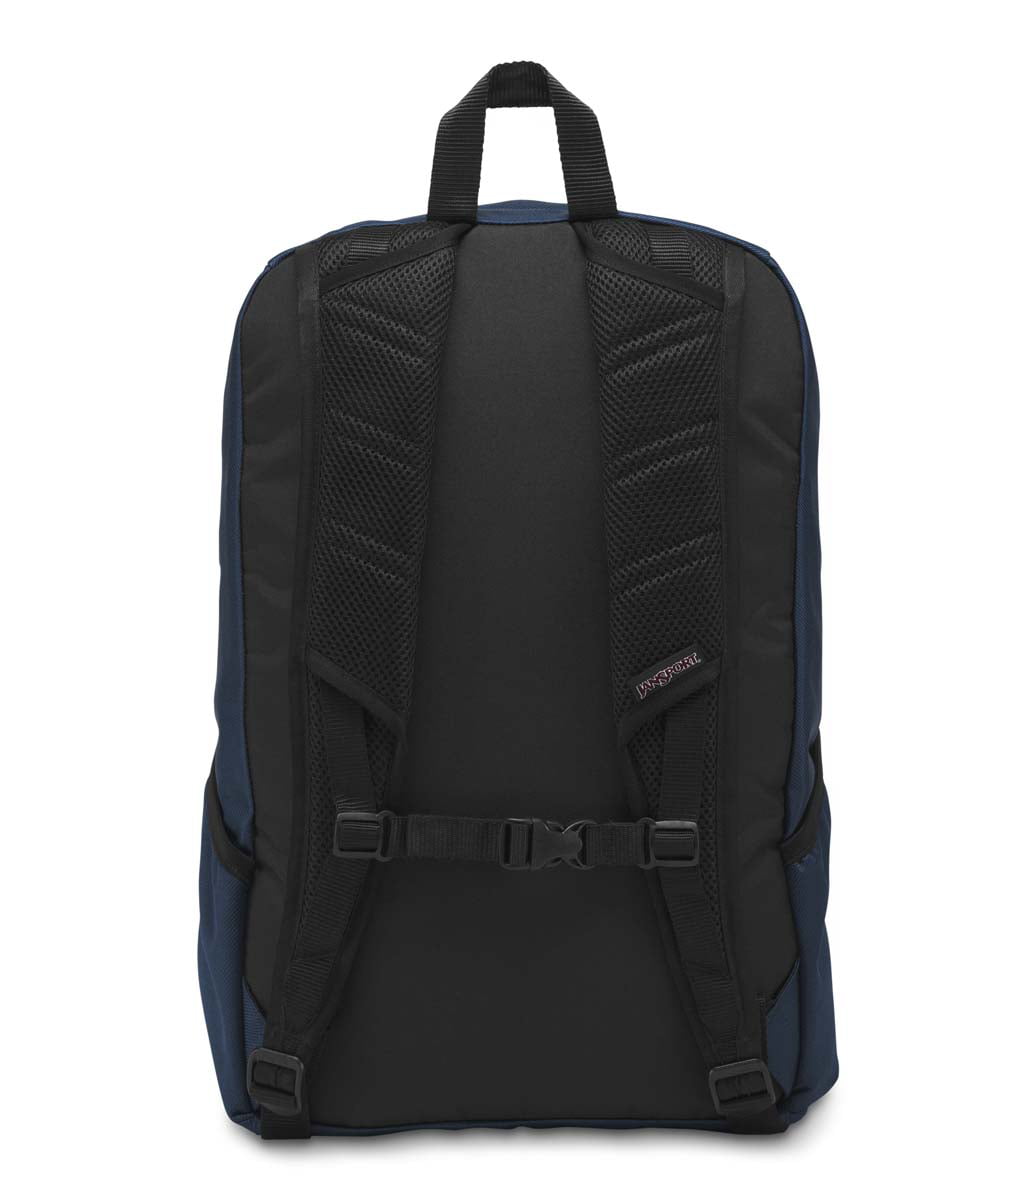 jansport wynwood backpack